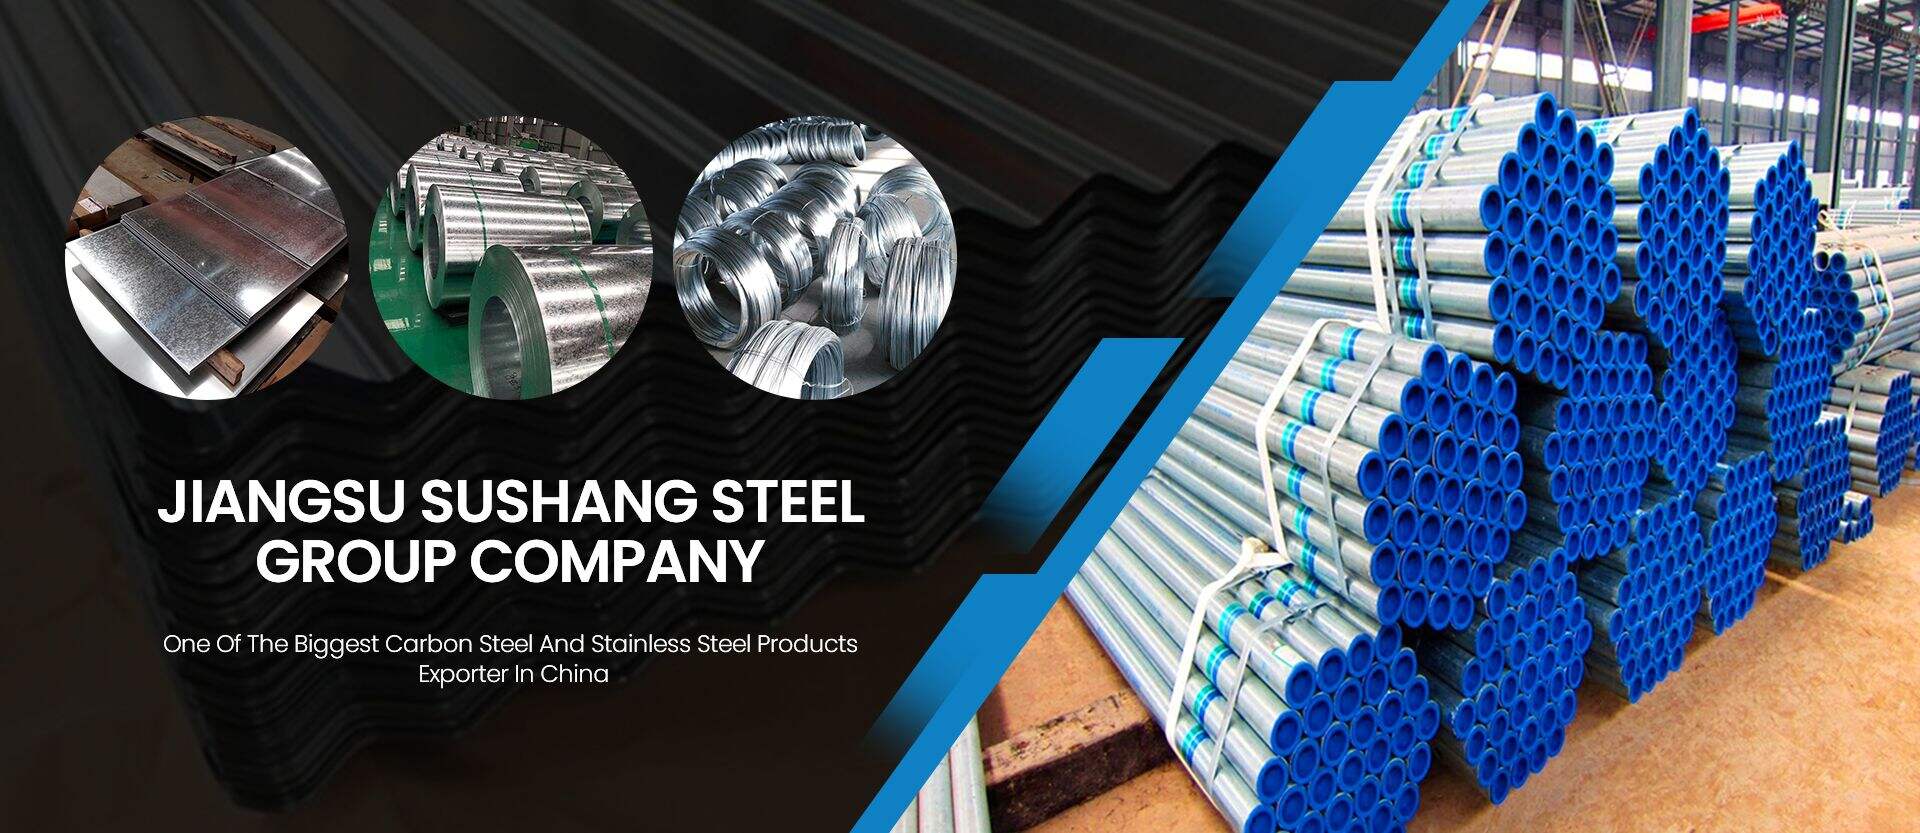 Compania Jiangsu Sushang Steel Group